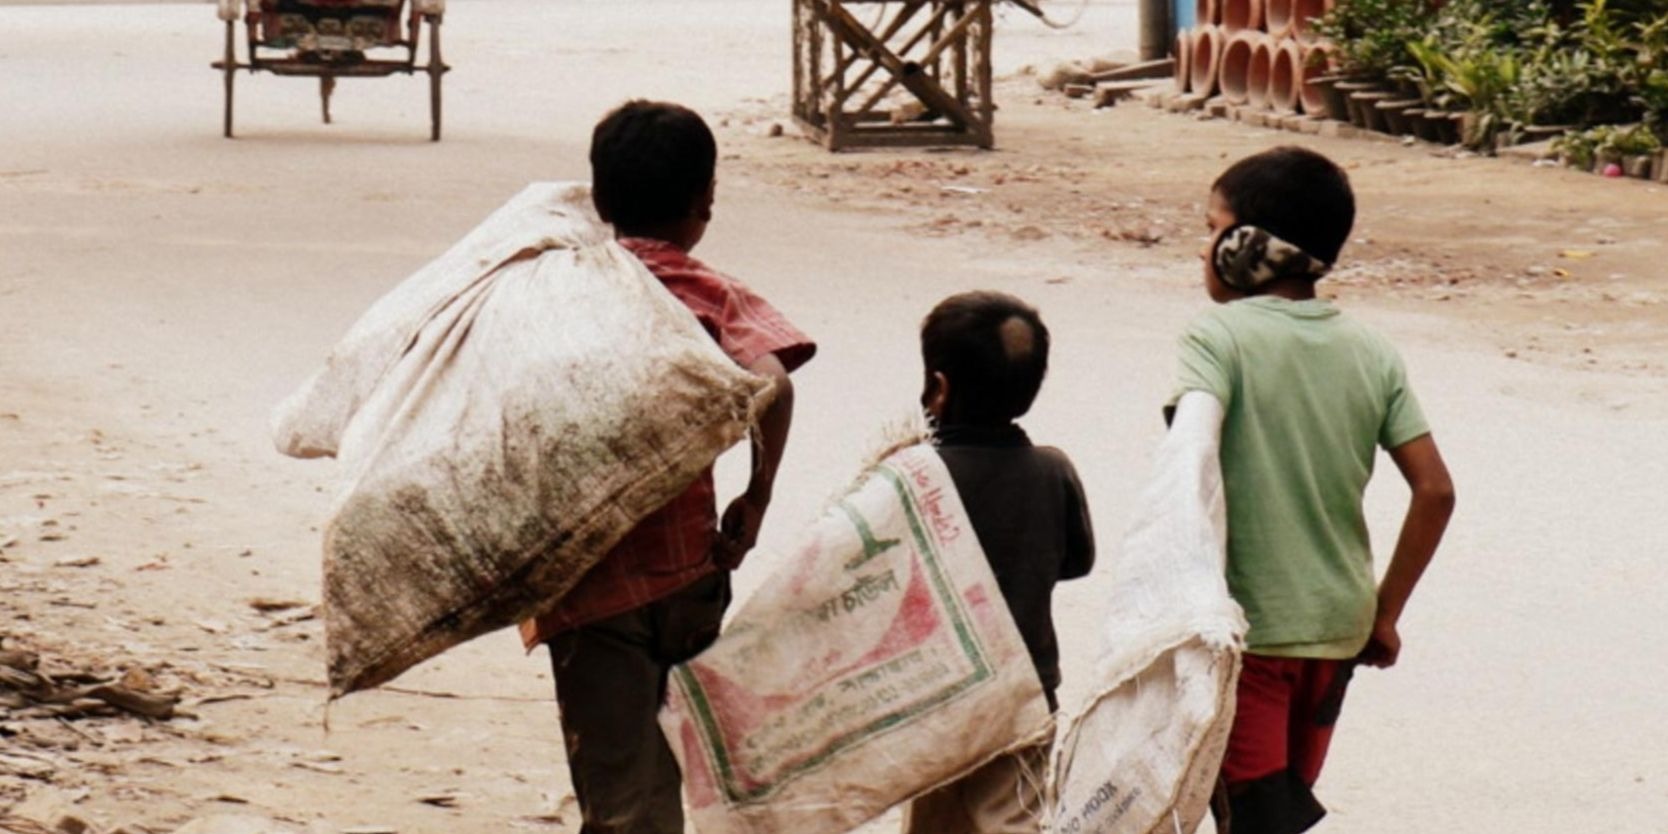 पूरे भारत में सड़कों पर रहने वाले केवल 20 हजार बच्चों का ही लगा पाए पता, पुनर्वास की प्रक्रिया शुरू  